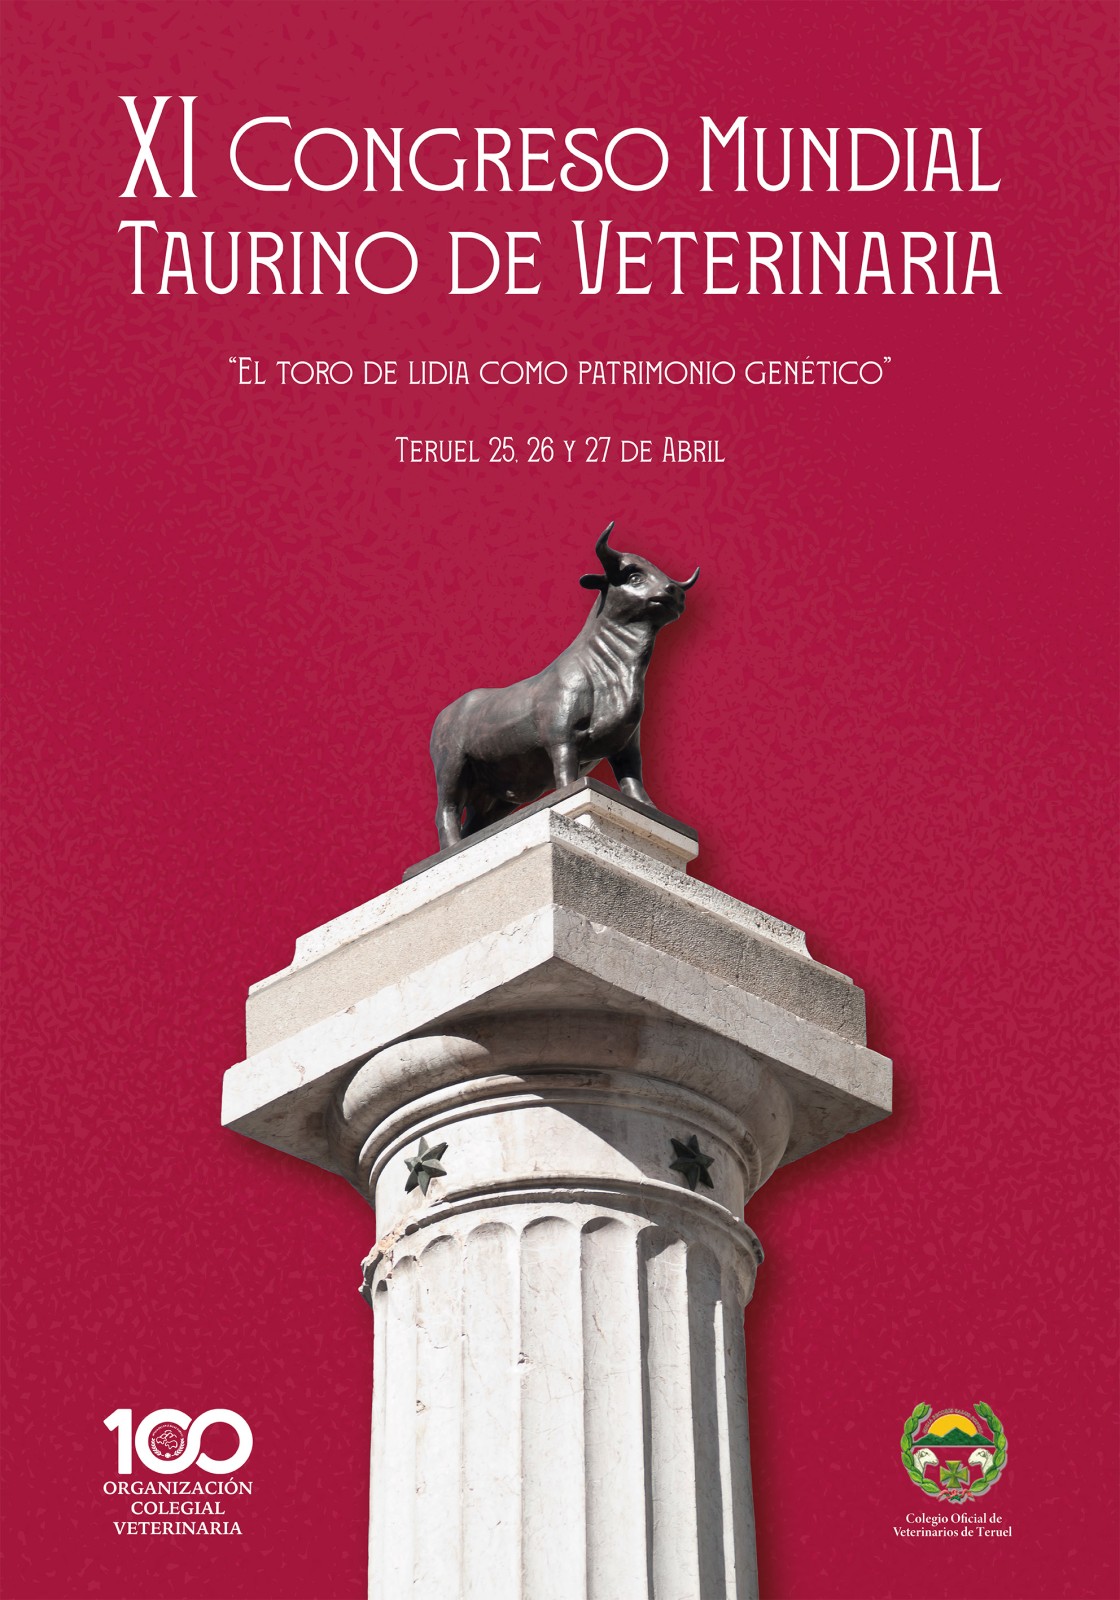 Teruel acogerá el XI Congreso Mundial Taurino de Veterinaria del 25 al 27 de abril